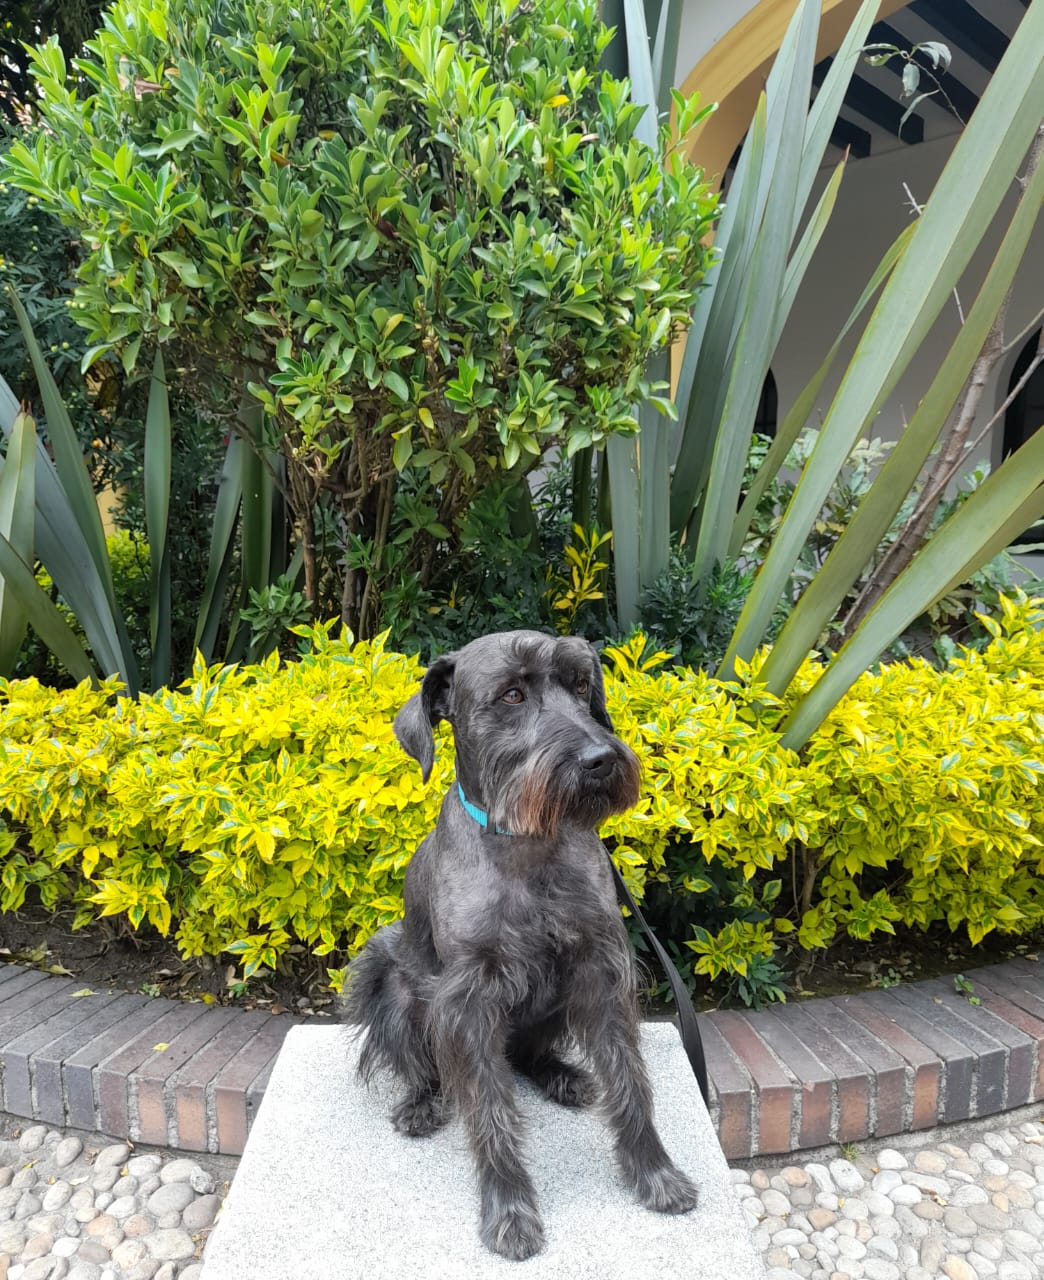 fotografía en la que se aprecia un perrito de la raza esnaucer, sentado frente a un jardín